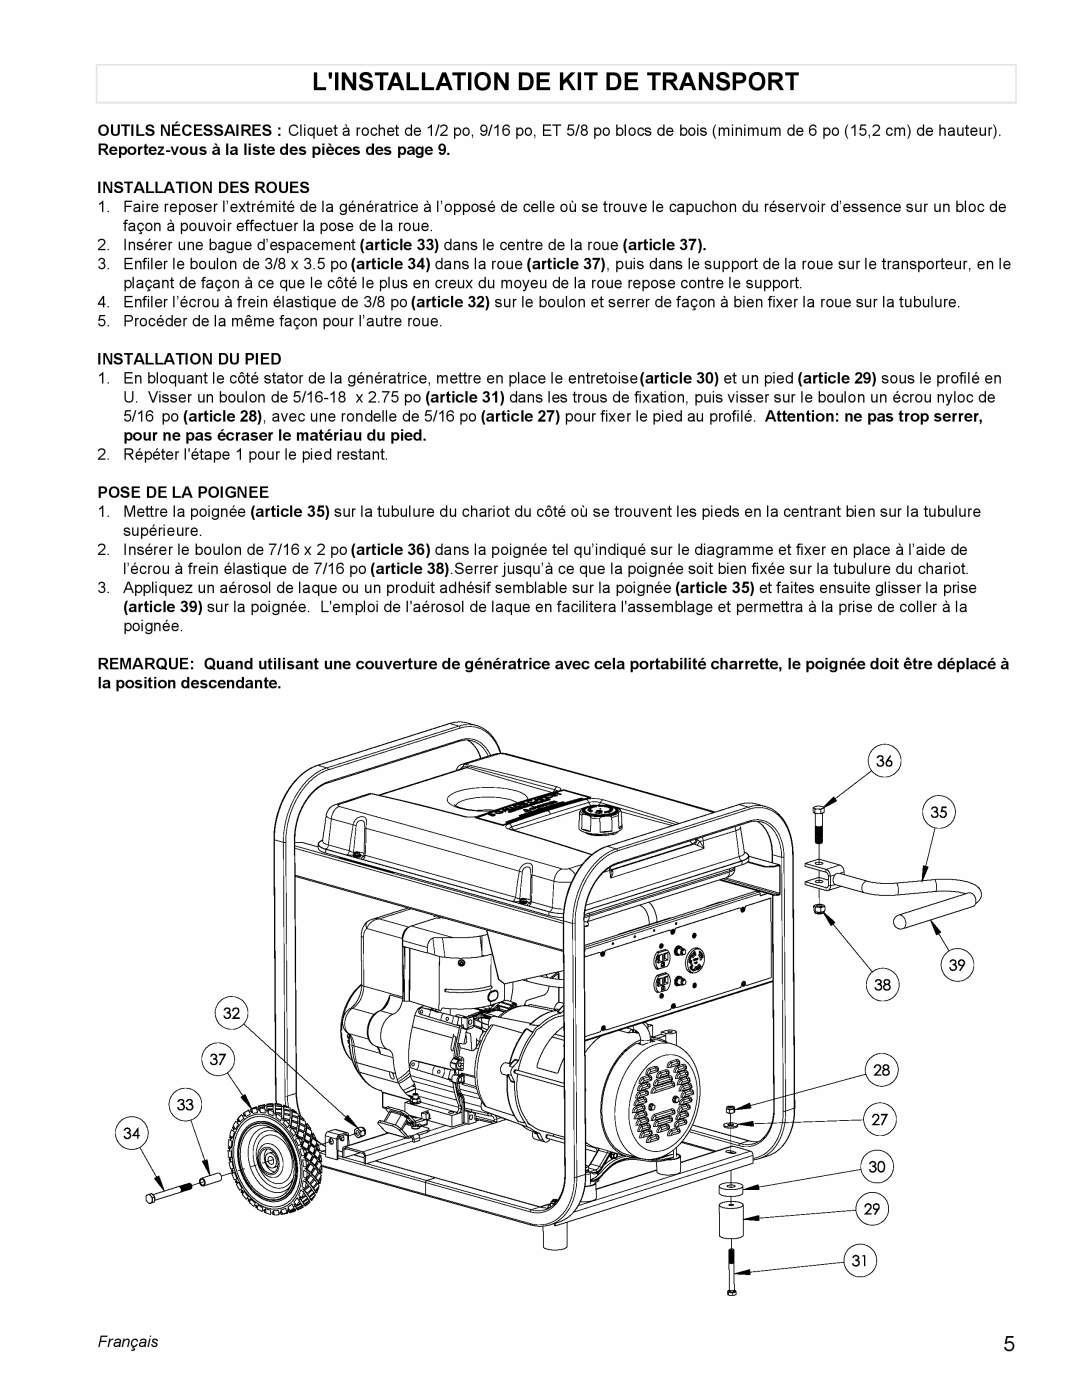 Powermate PM0525303.01 Linstallation De Kit De Transport, Reportez-vousà la liste des pièces des page, Pose De La Poignee 